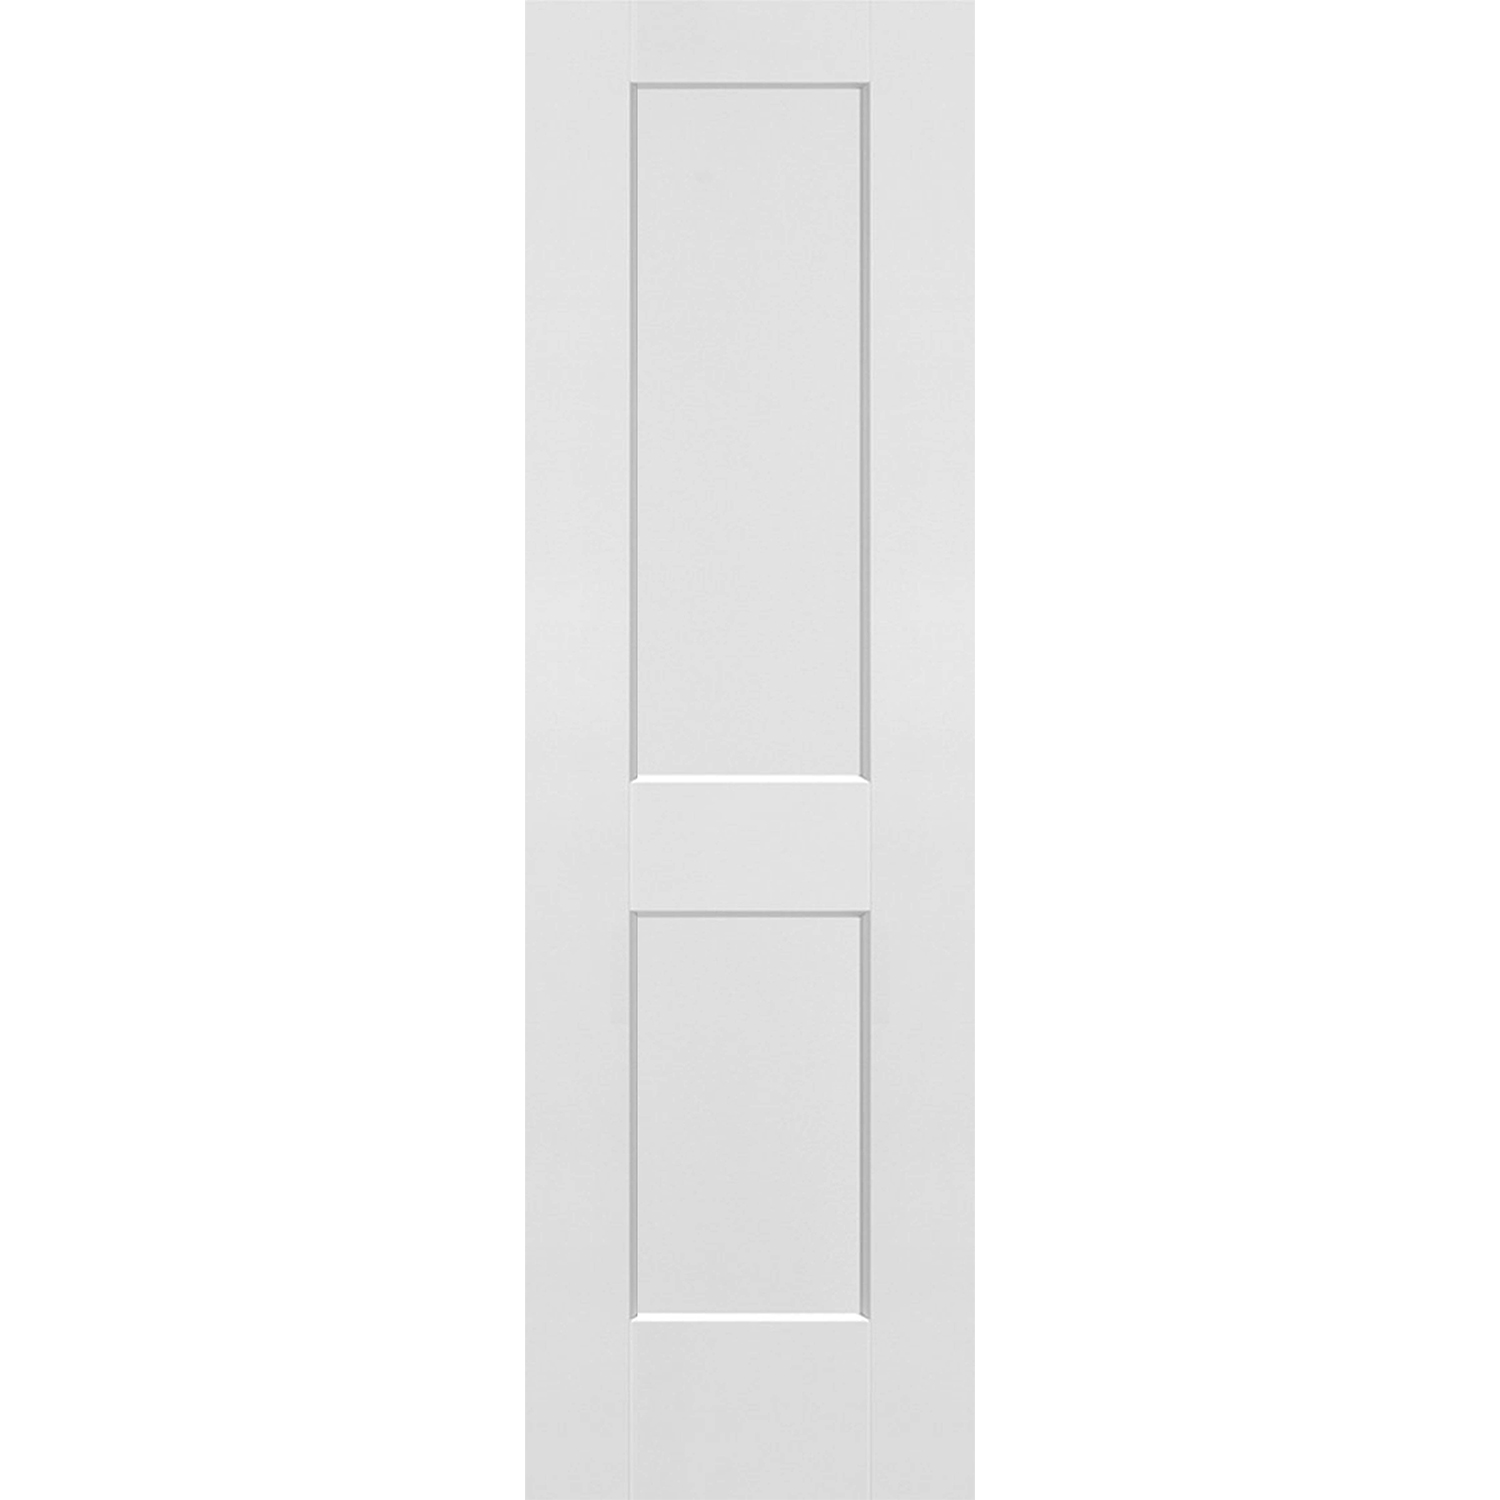 2 Panel Solid Door - 24 x 80